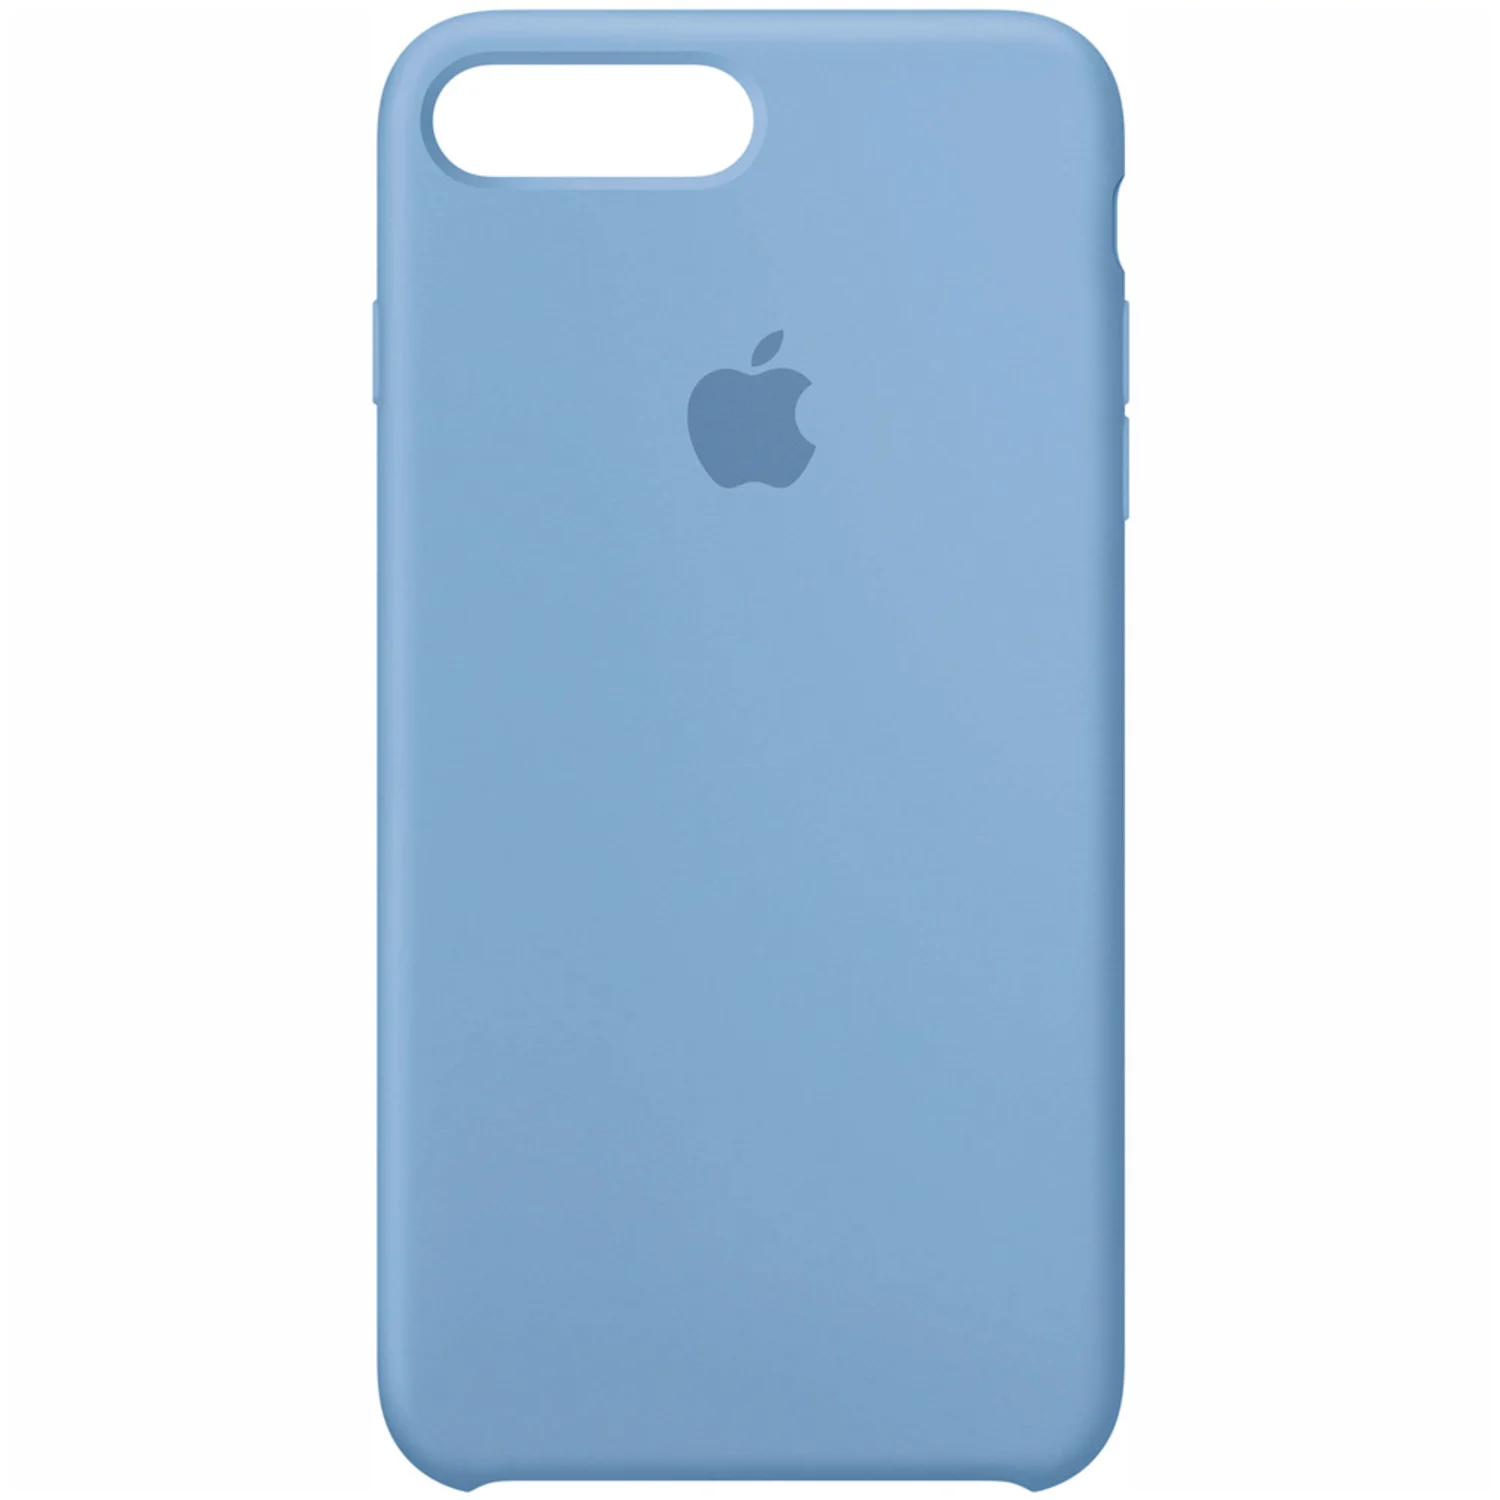 Capa para iPhone 7 Plus Silicone Apple Azure - Azul (9041)